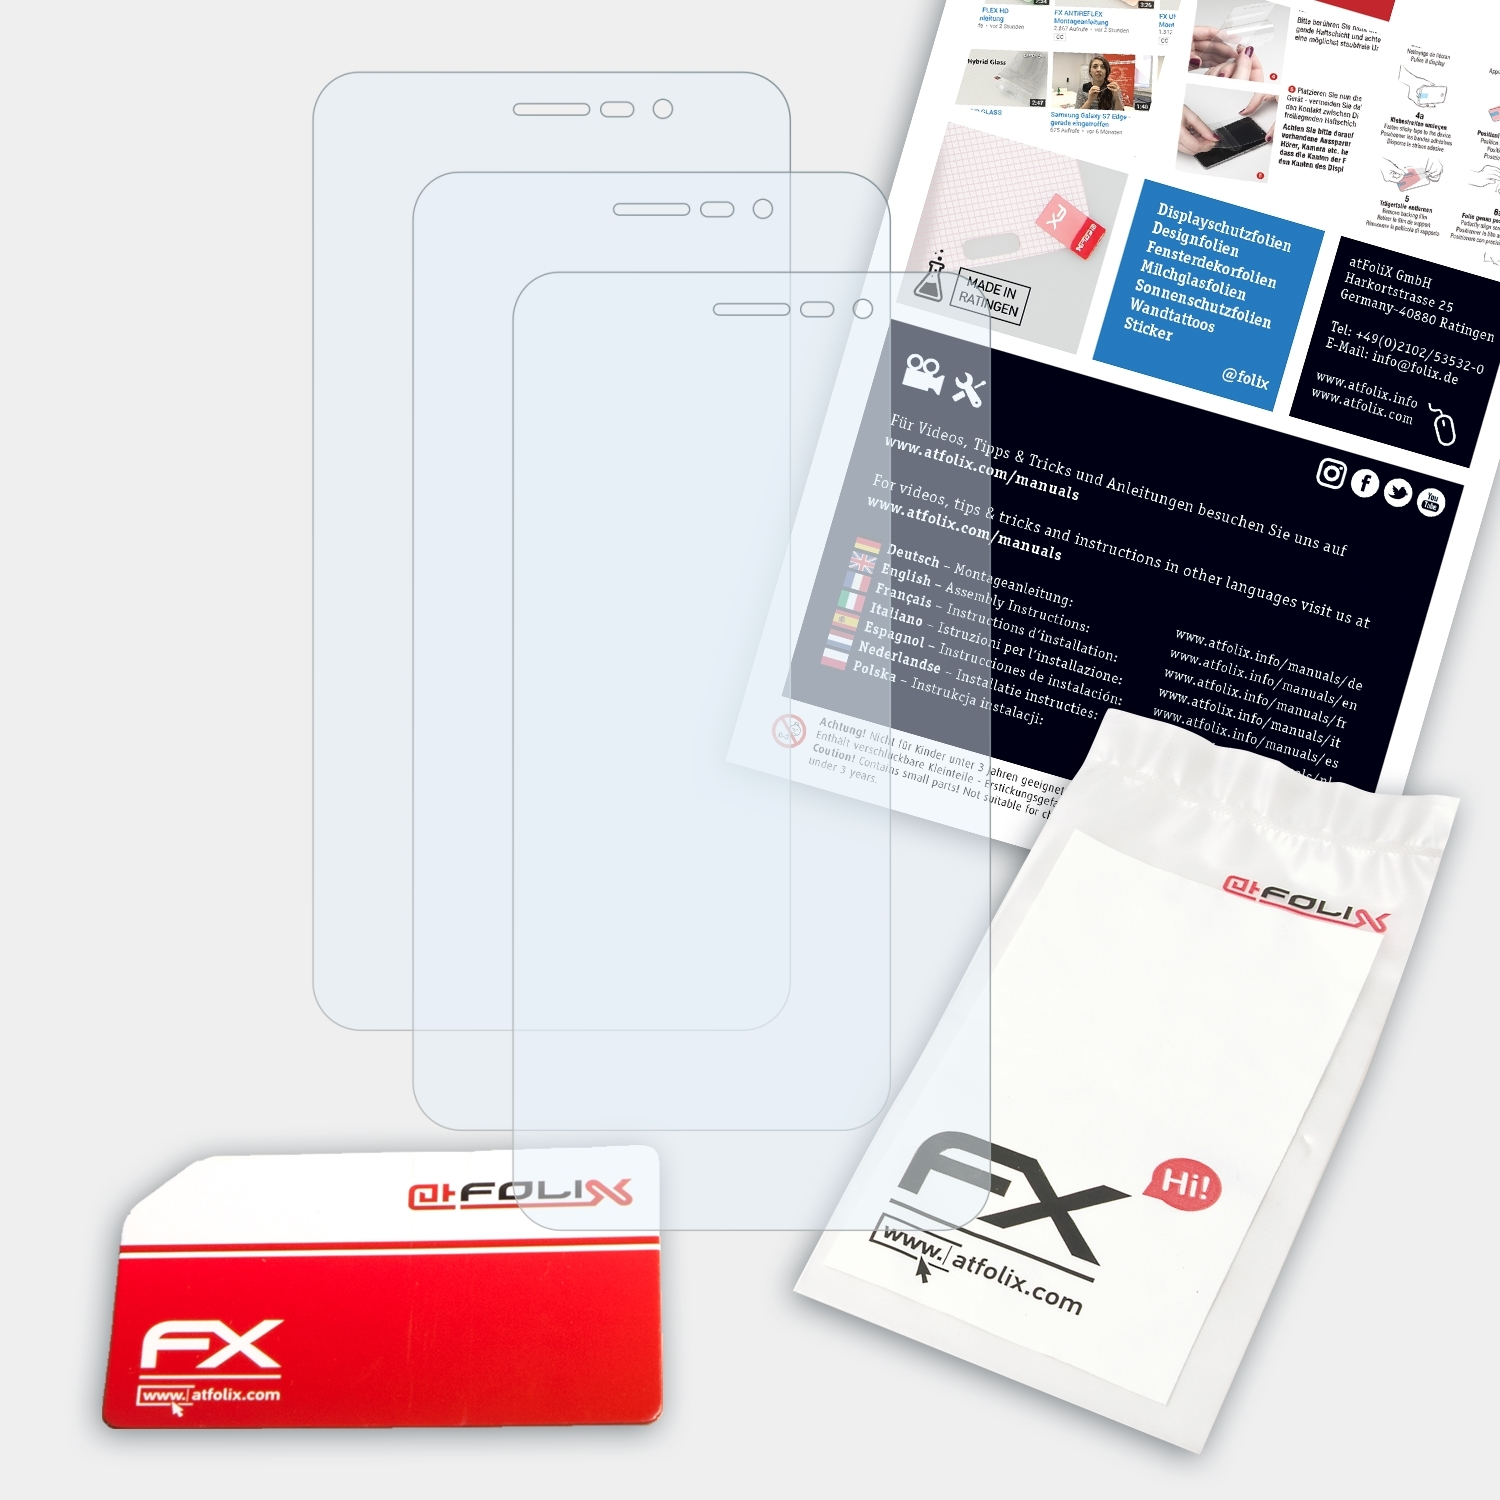 ATFOLIX 3x FX-Clear Displayschutz(für (MD99905)) LIFE S5504 Medion